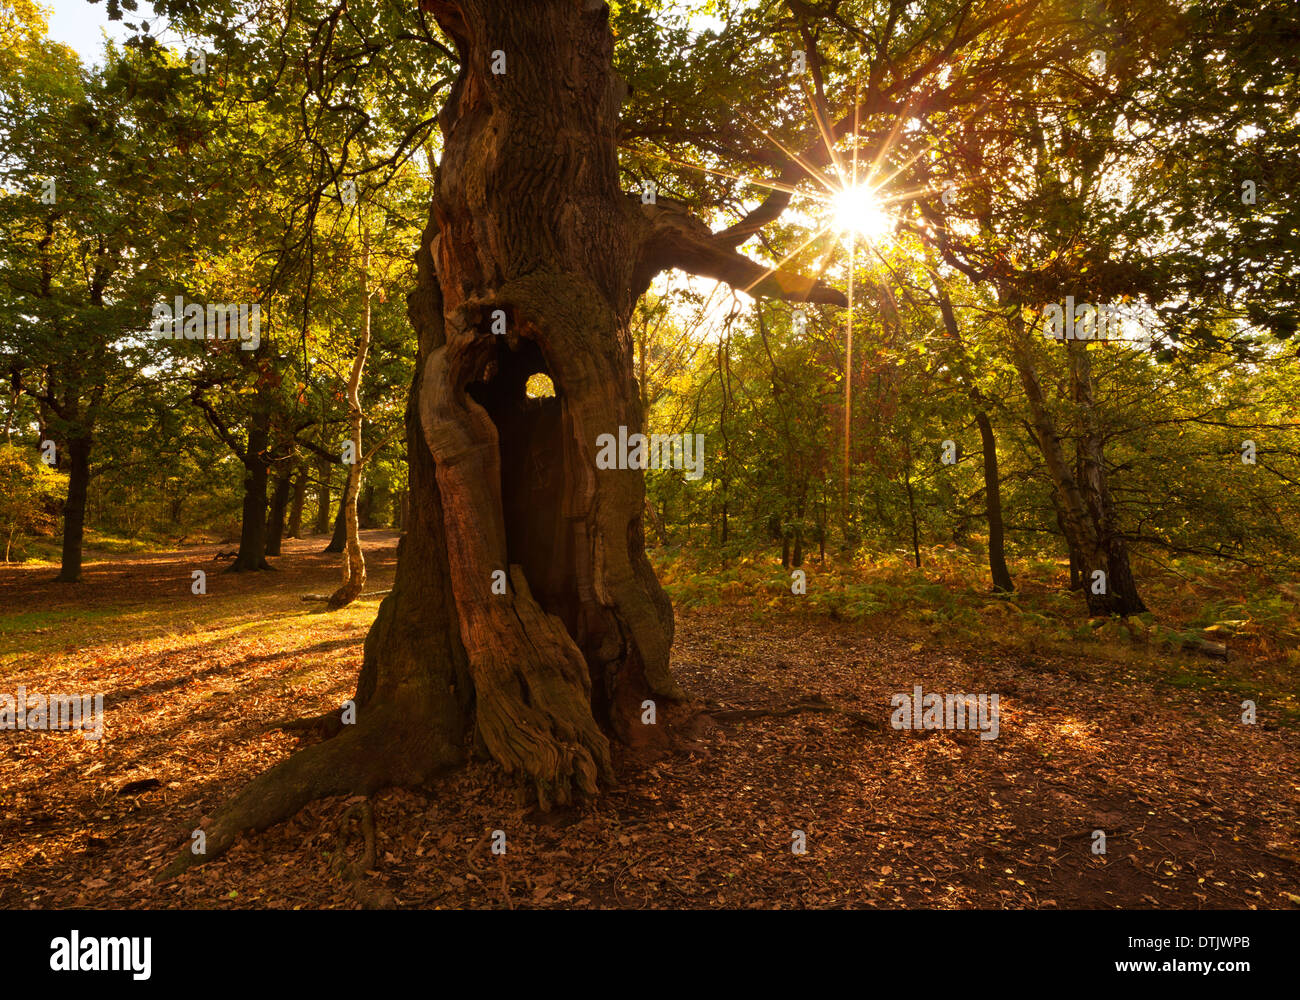 Soleil à travers les arbres dans la forêt de Sherwood arbres Edwinstowe Mansfield Notinghamshire Angleterre Royaume-Uni GB Europe Banque D'Images